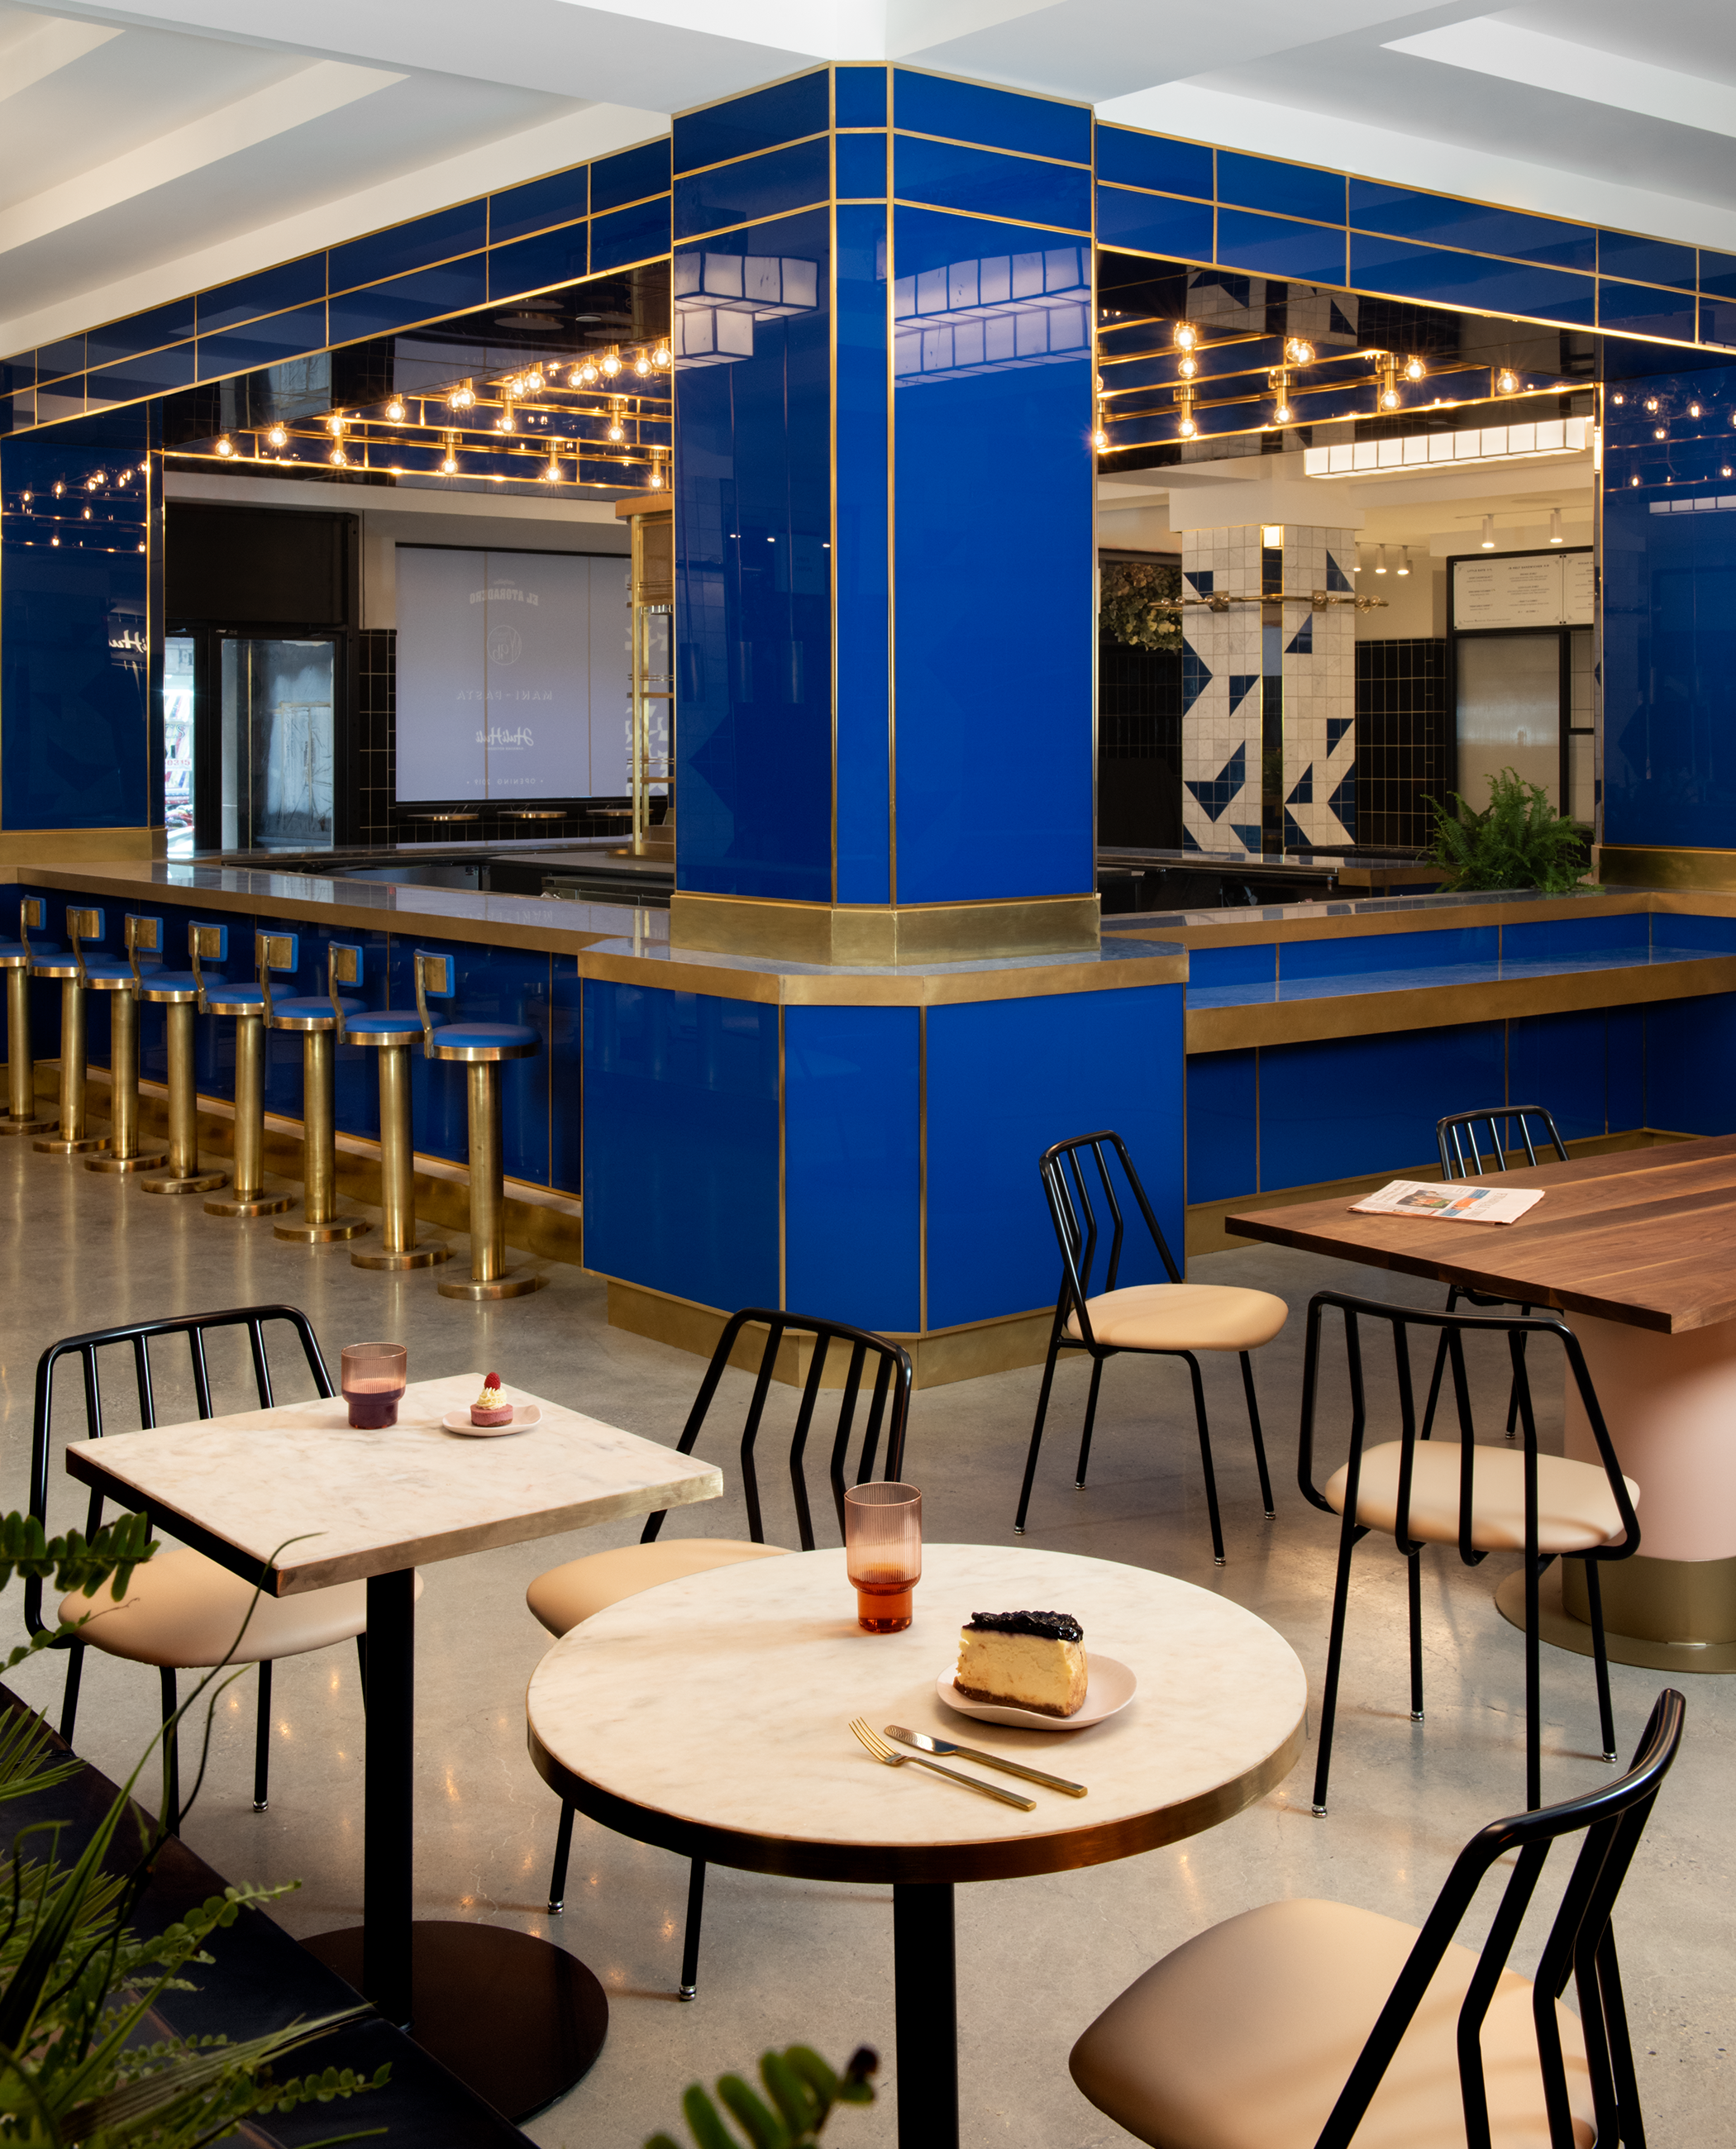 The Deco New York blue bar interior design